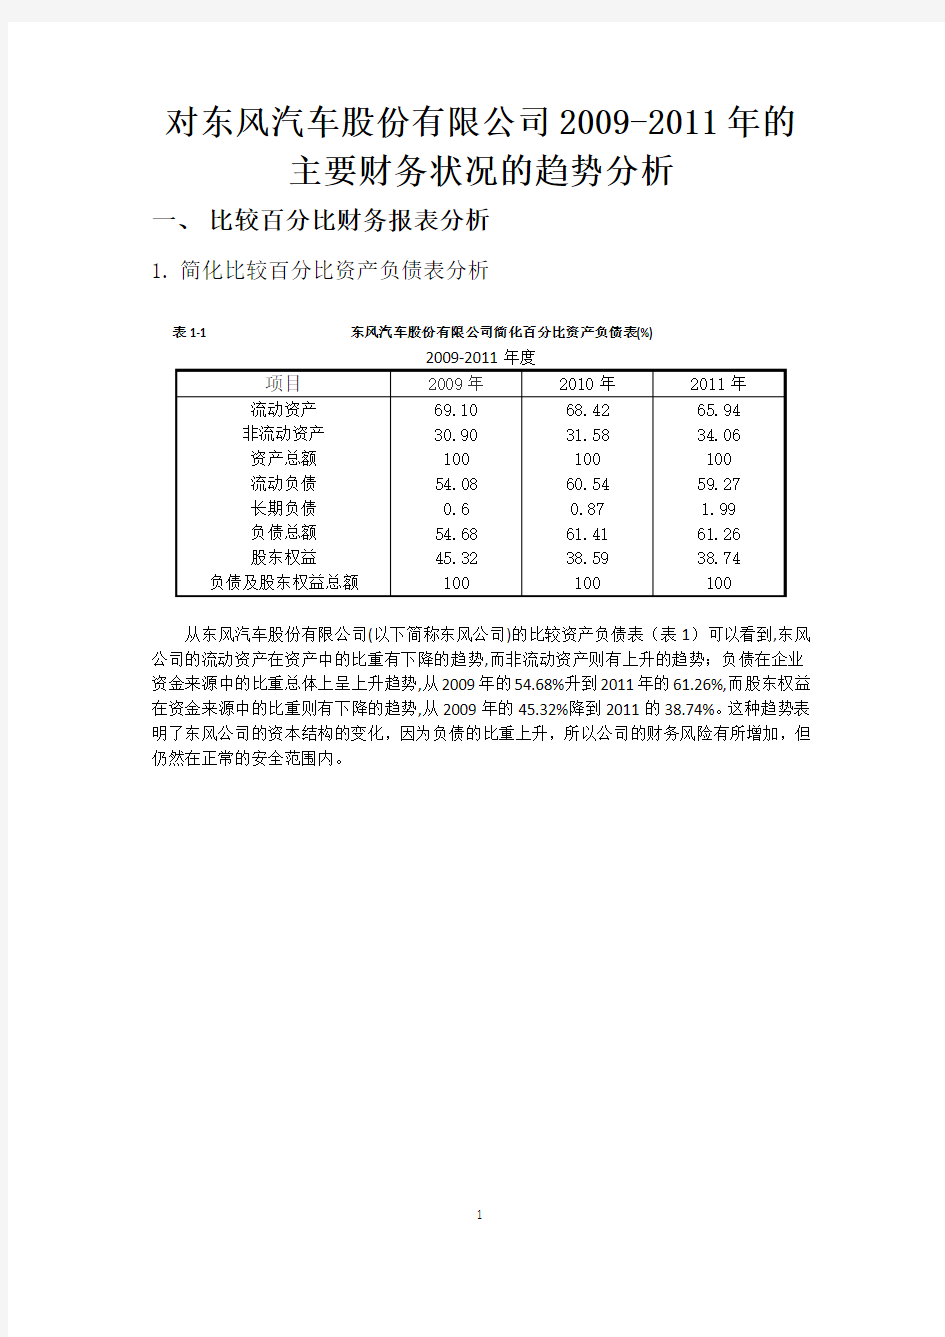 对东风汽车股份有限公司2009-2011年的 主要财务状况的趋势分析